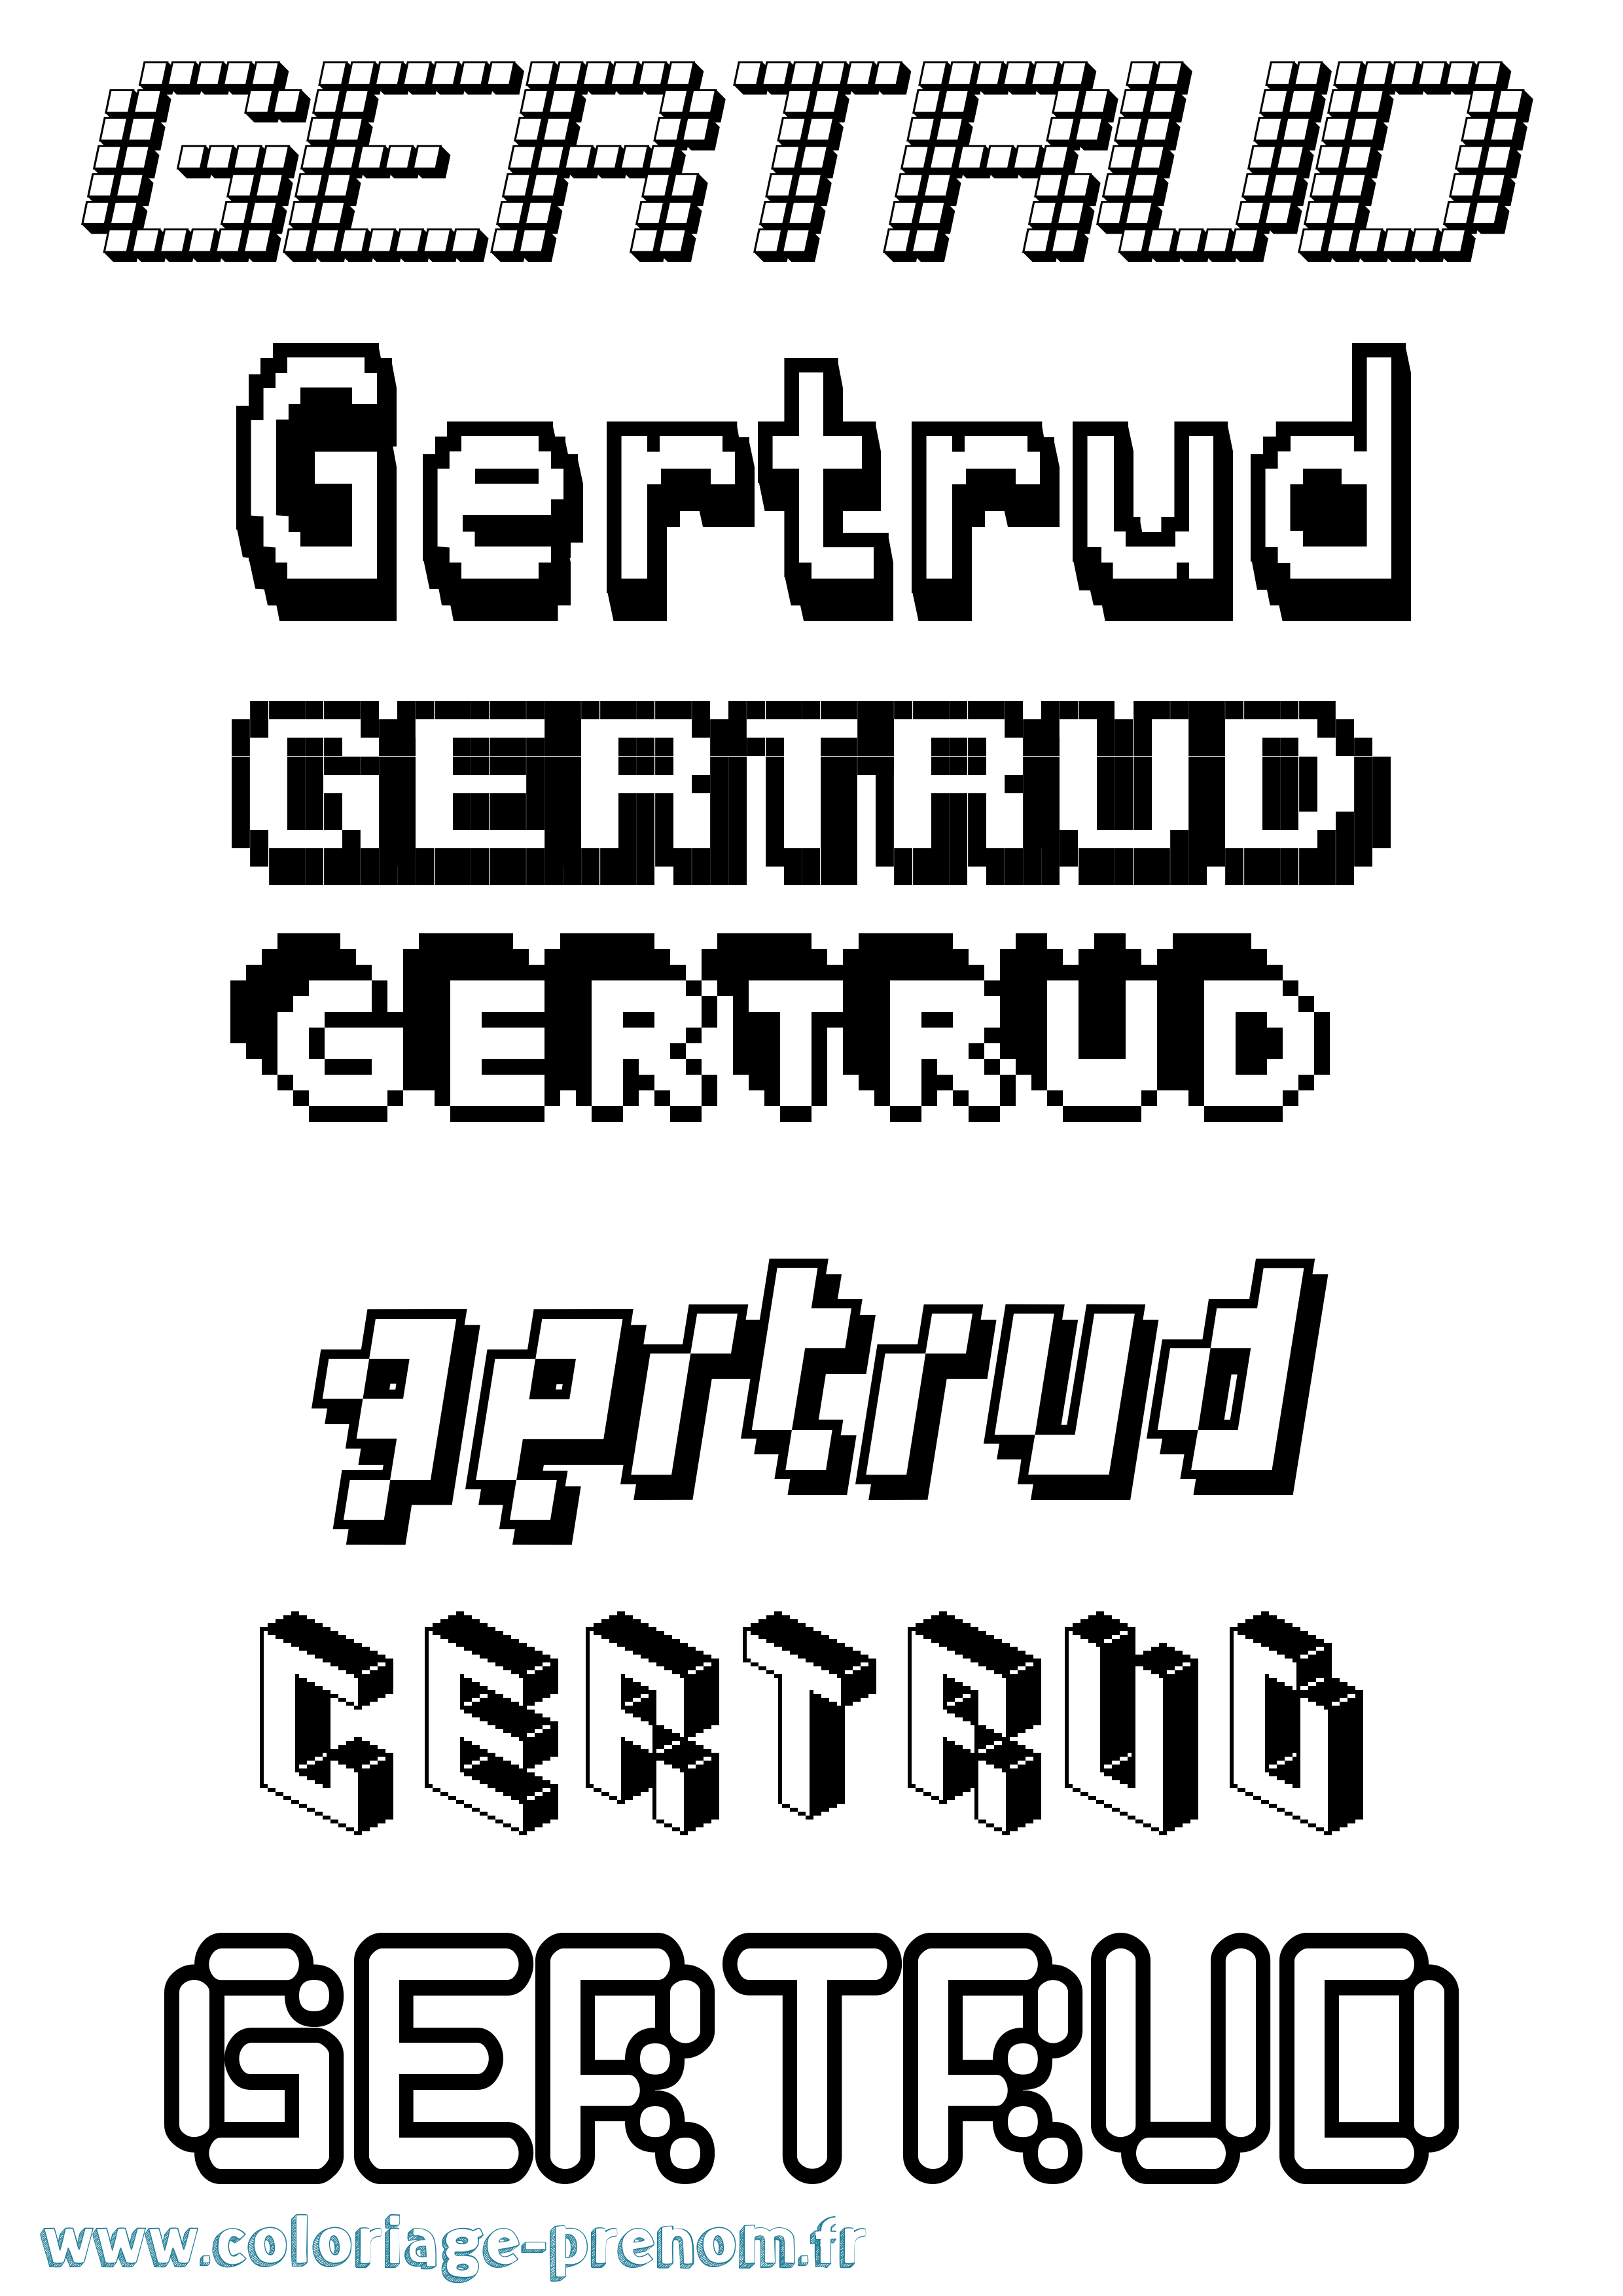 Coloriage prénom Gertrud Pixel